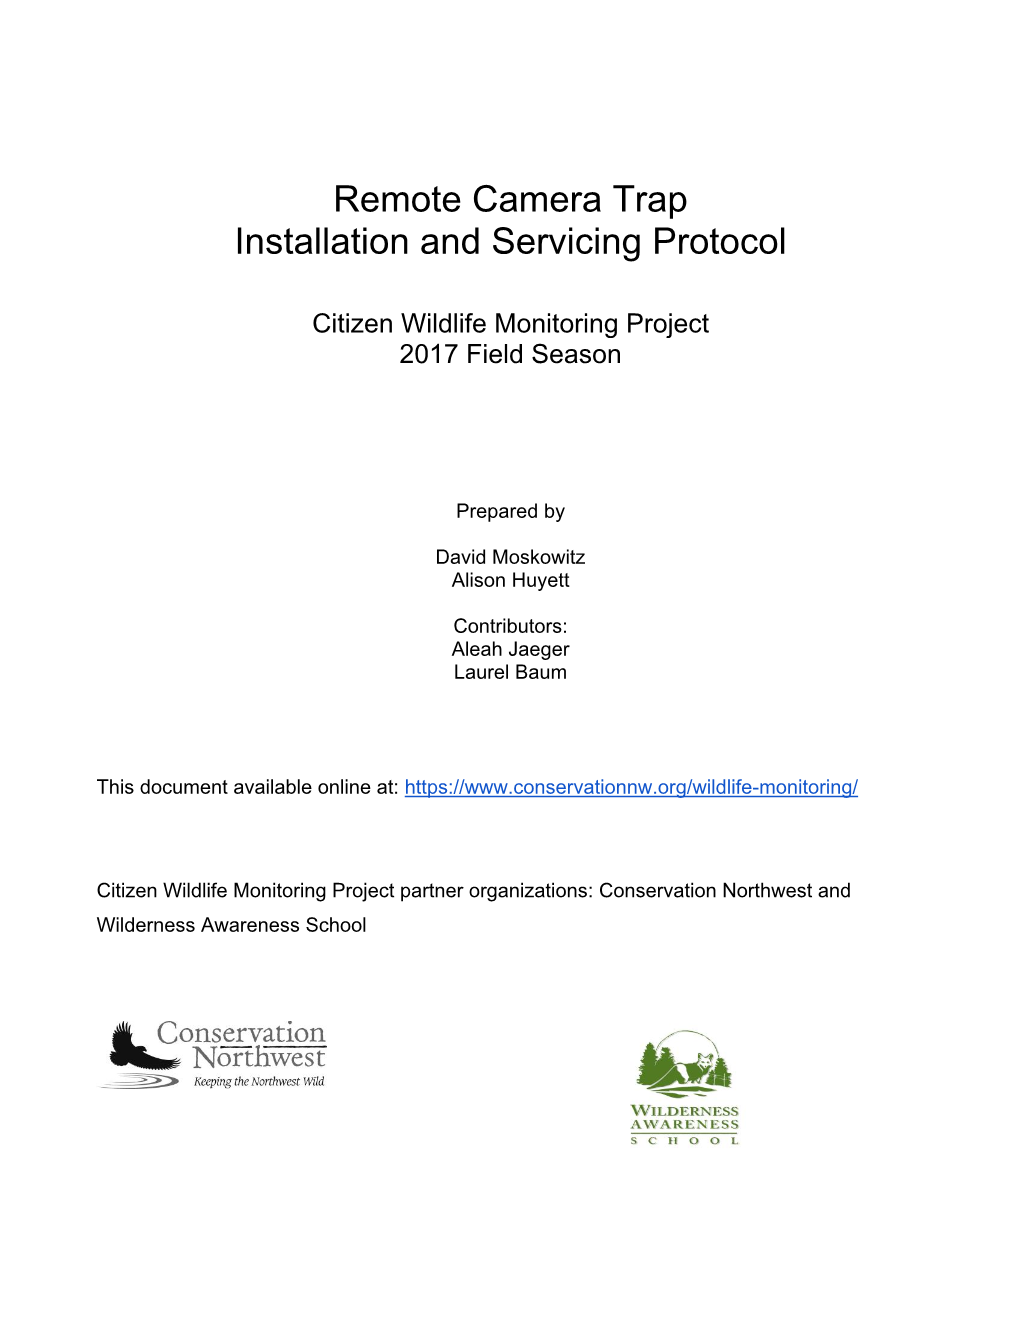 Remote Camera Trap Installation and Servicing Protocol